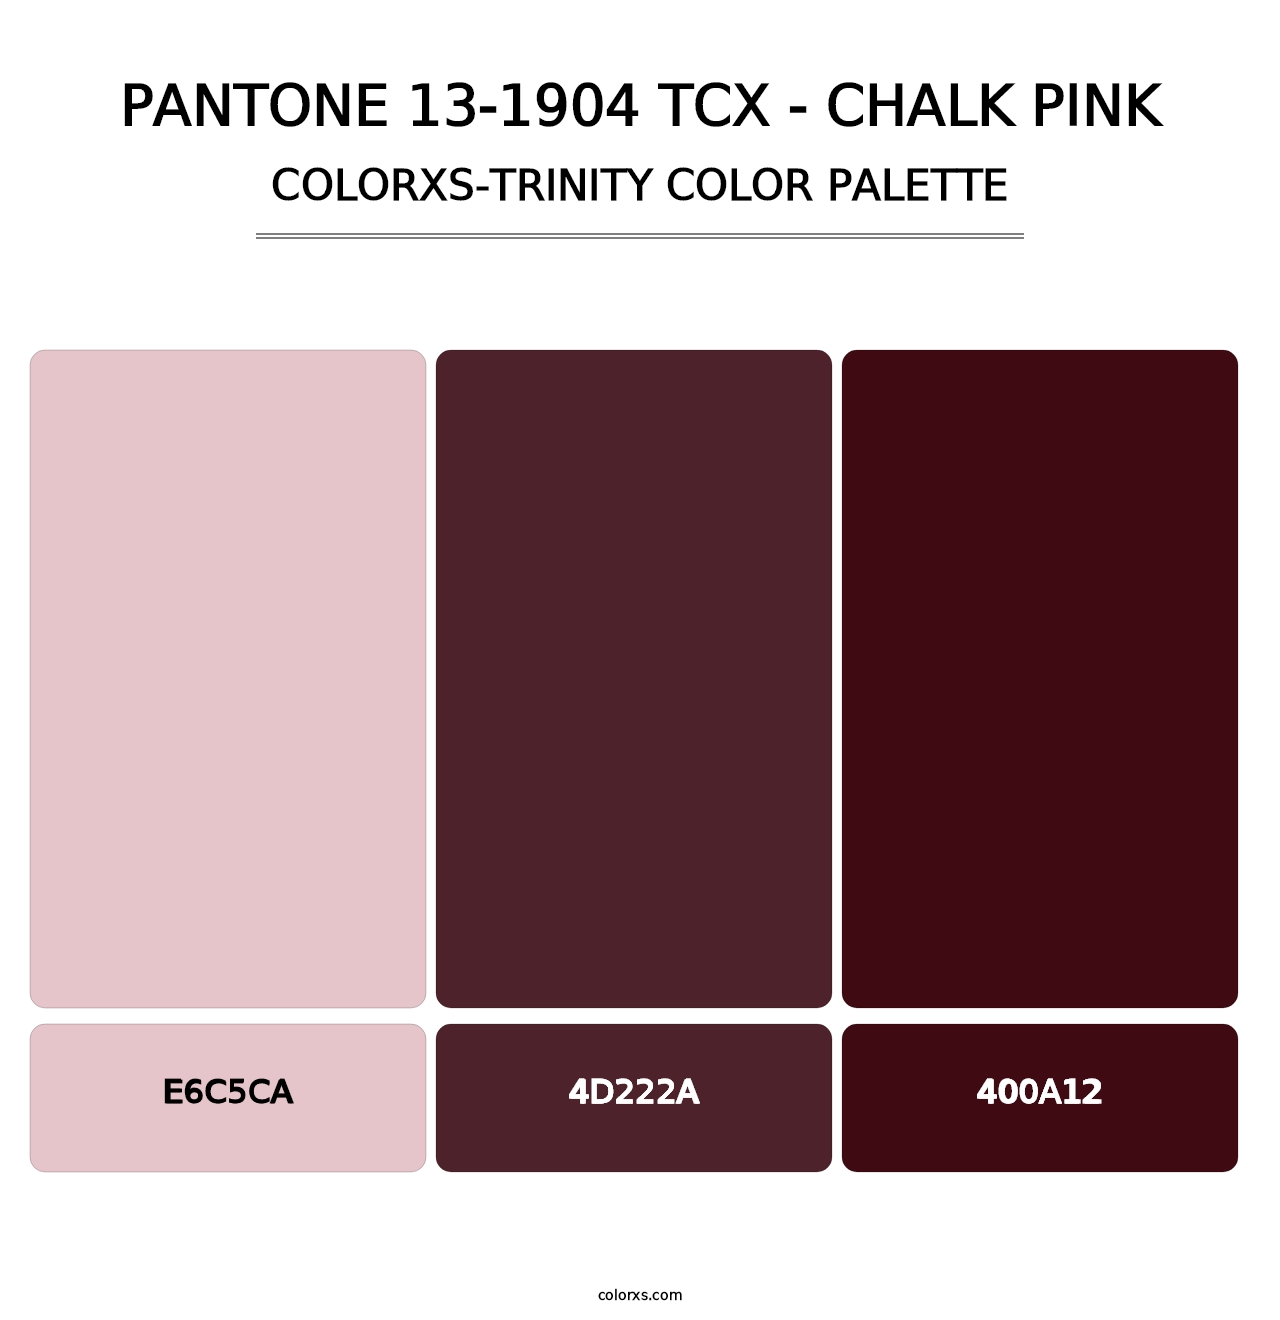 PANTONE 13-1904 TCX - Chalk Pink - Colorxs Trinity Palette